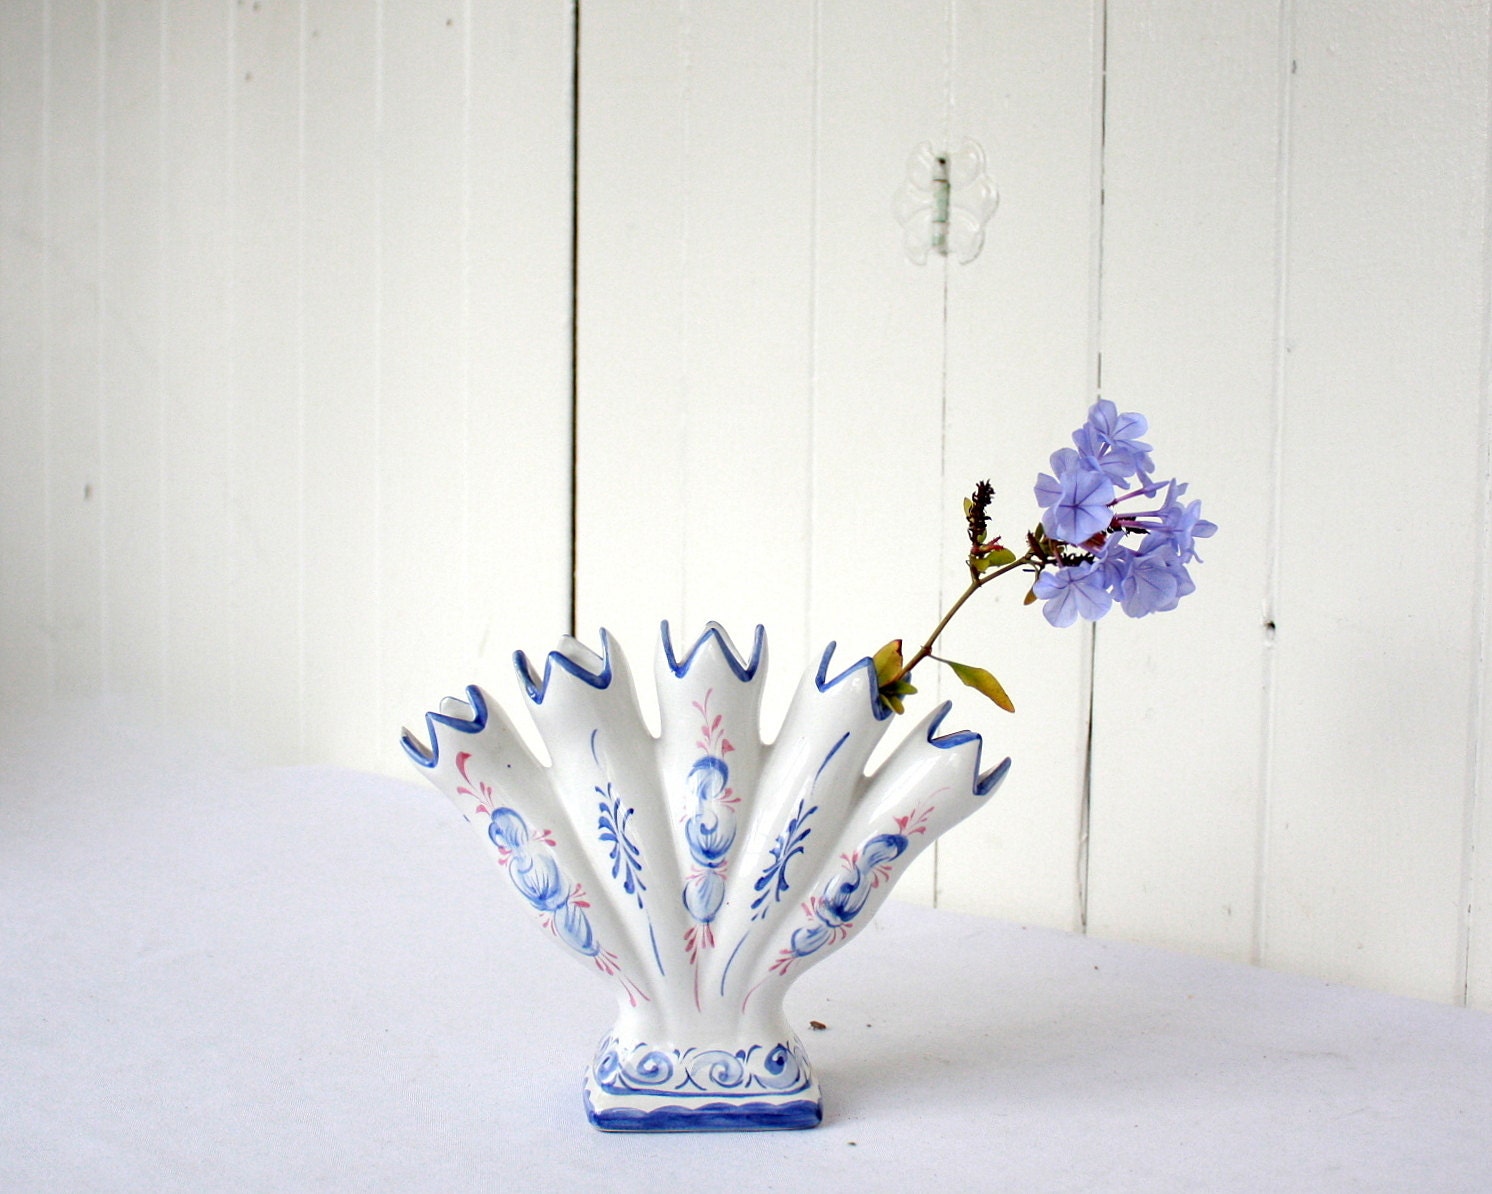 Vintage Finger Vase, Five Finger Vase, Handpainted Finger Vase, Ceramic Vase, Made in Portugal, Blue and White, Flower Vase, Hand Painted - SummerHolidayVintage